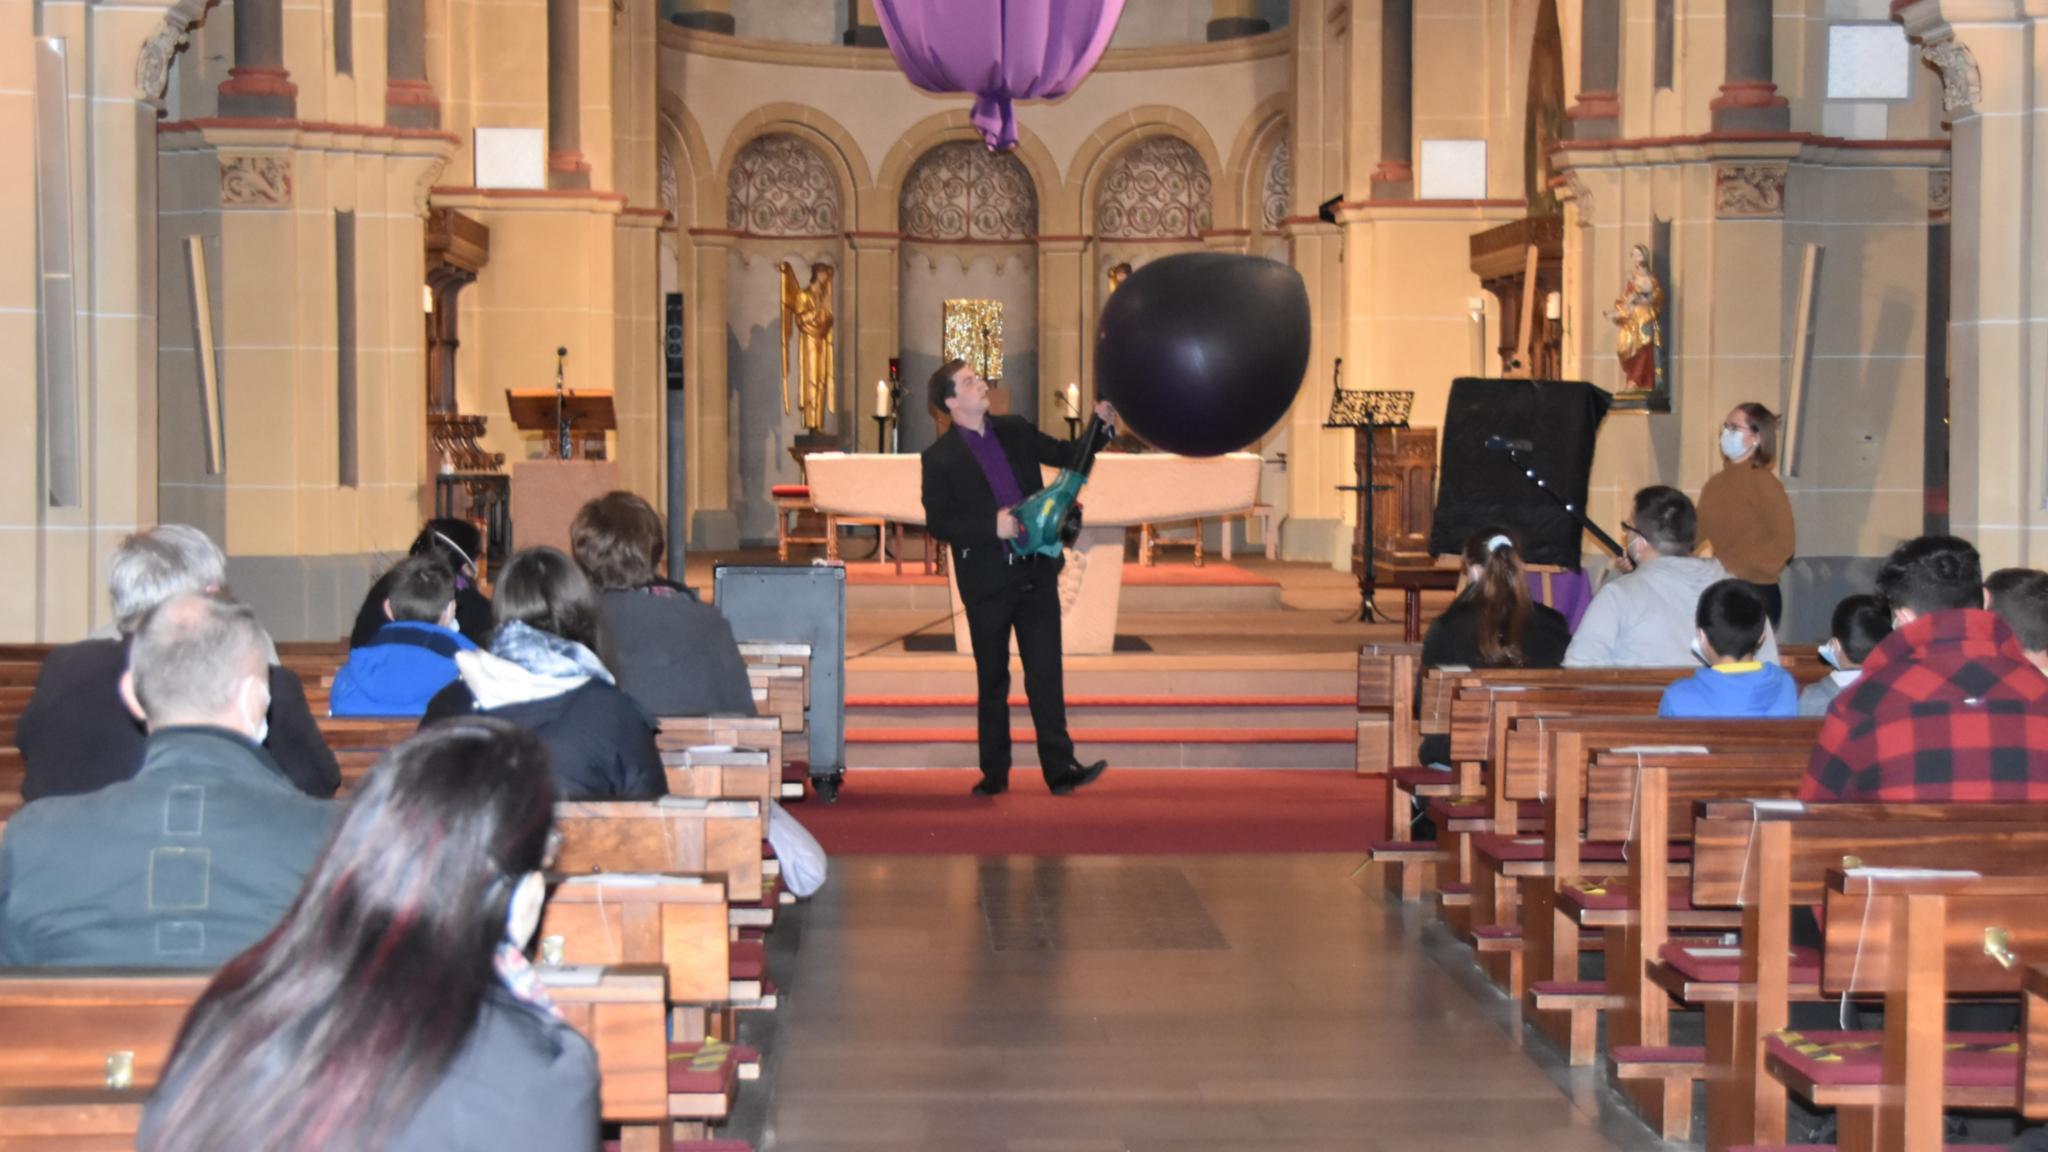 Mit einer Art Laubbläser pustet Maxim Maurice (Philipp Daub) den Ballon im Altarraum auf. Foto: uk